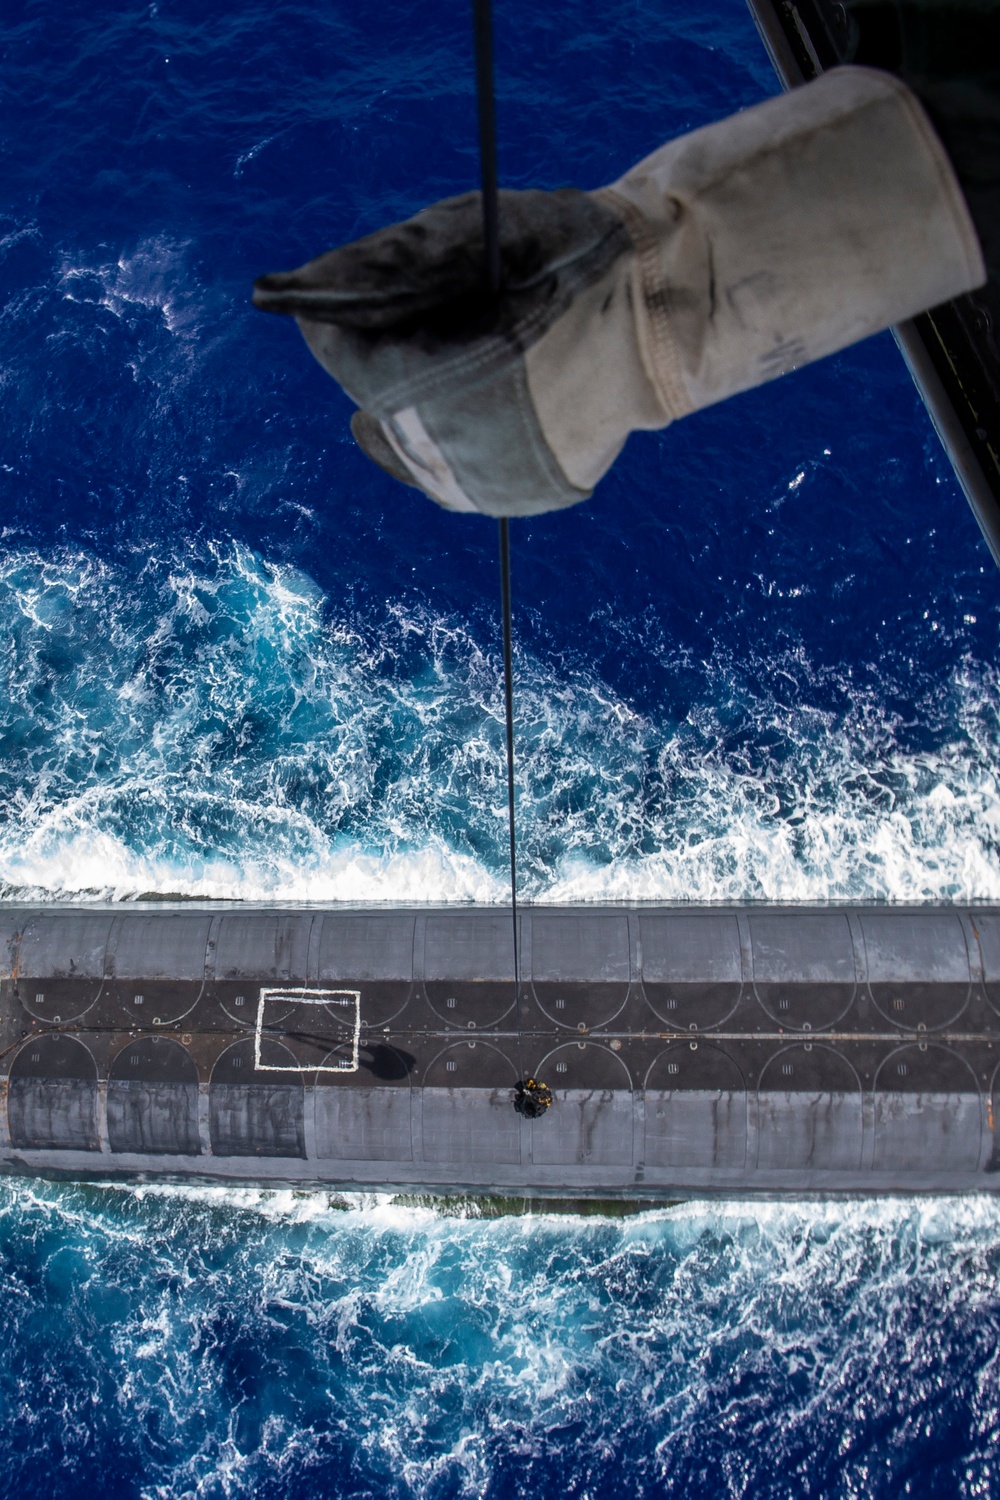 MV-22B Osprey Delivers Payload to USS Henry M. Jackson​